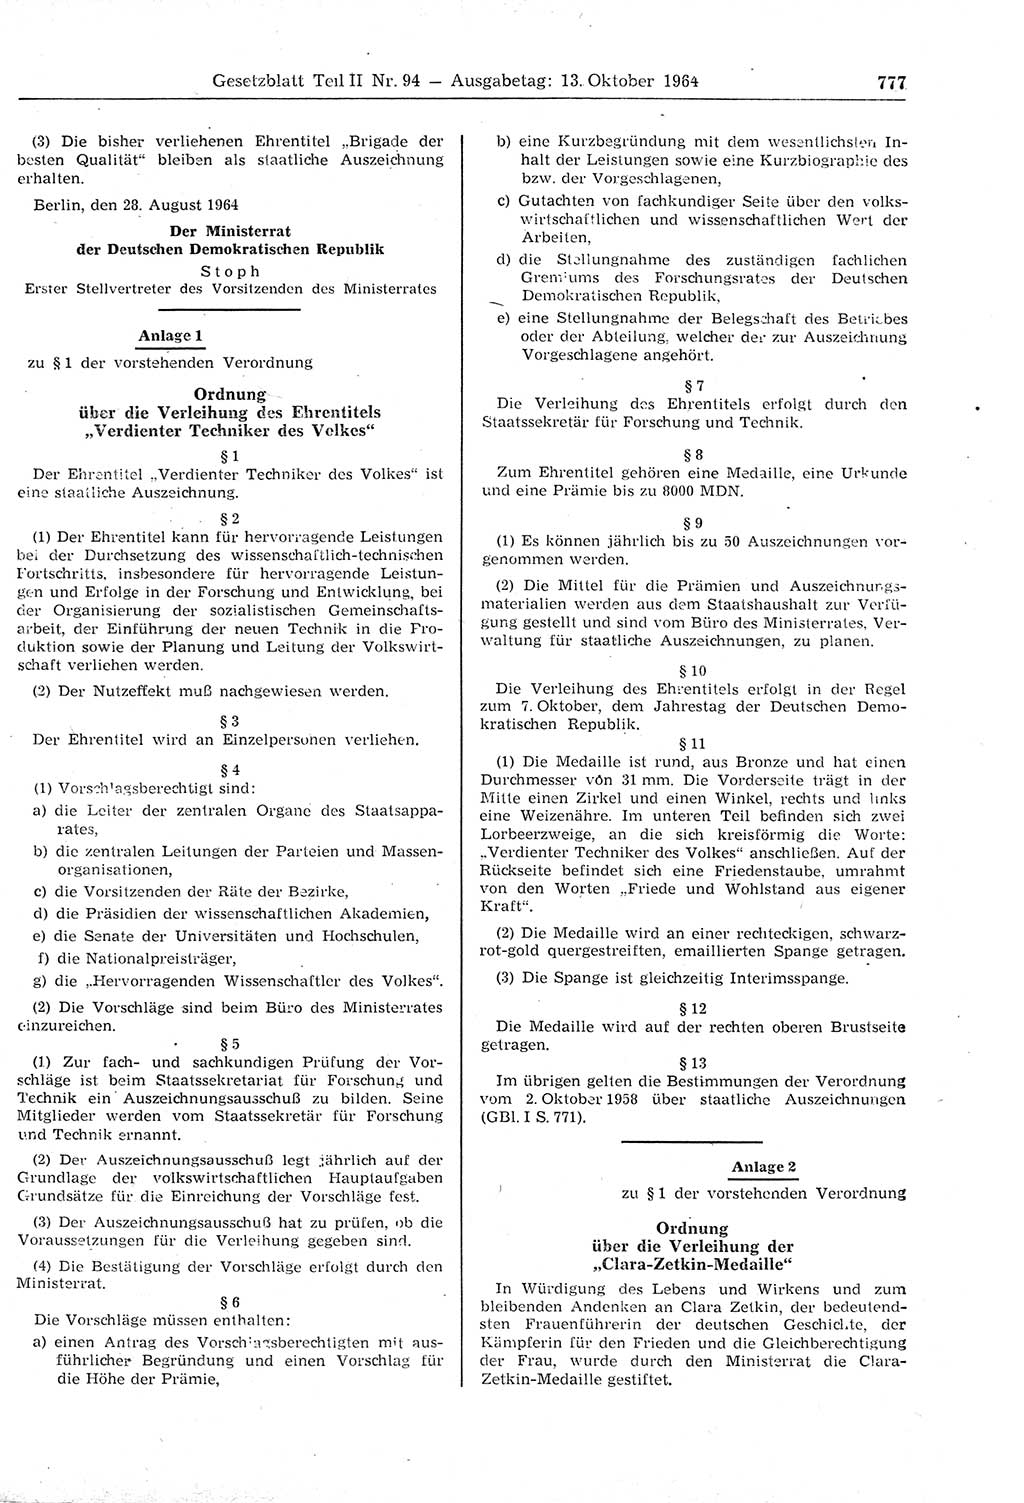 Gesetzblatt (GBl.) der Deutschen Demokratischen Republik (DDR) Teil ⅠⅠ 1964, Seite 777 (GBl. DDR ⅠⅠ 1964, S. 777)